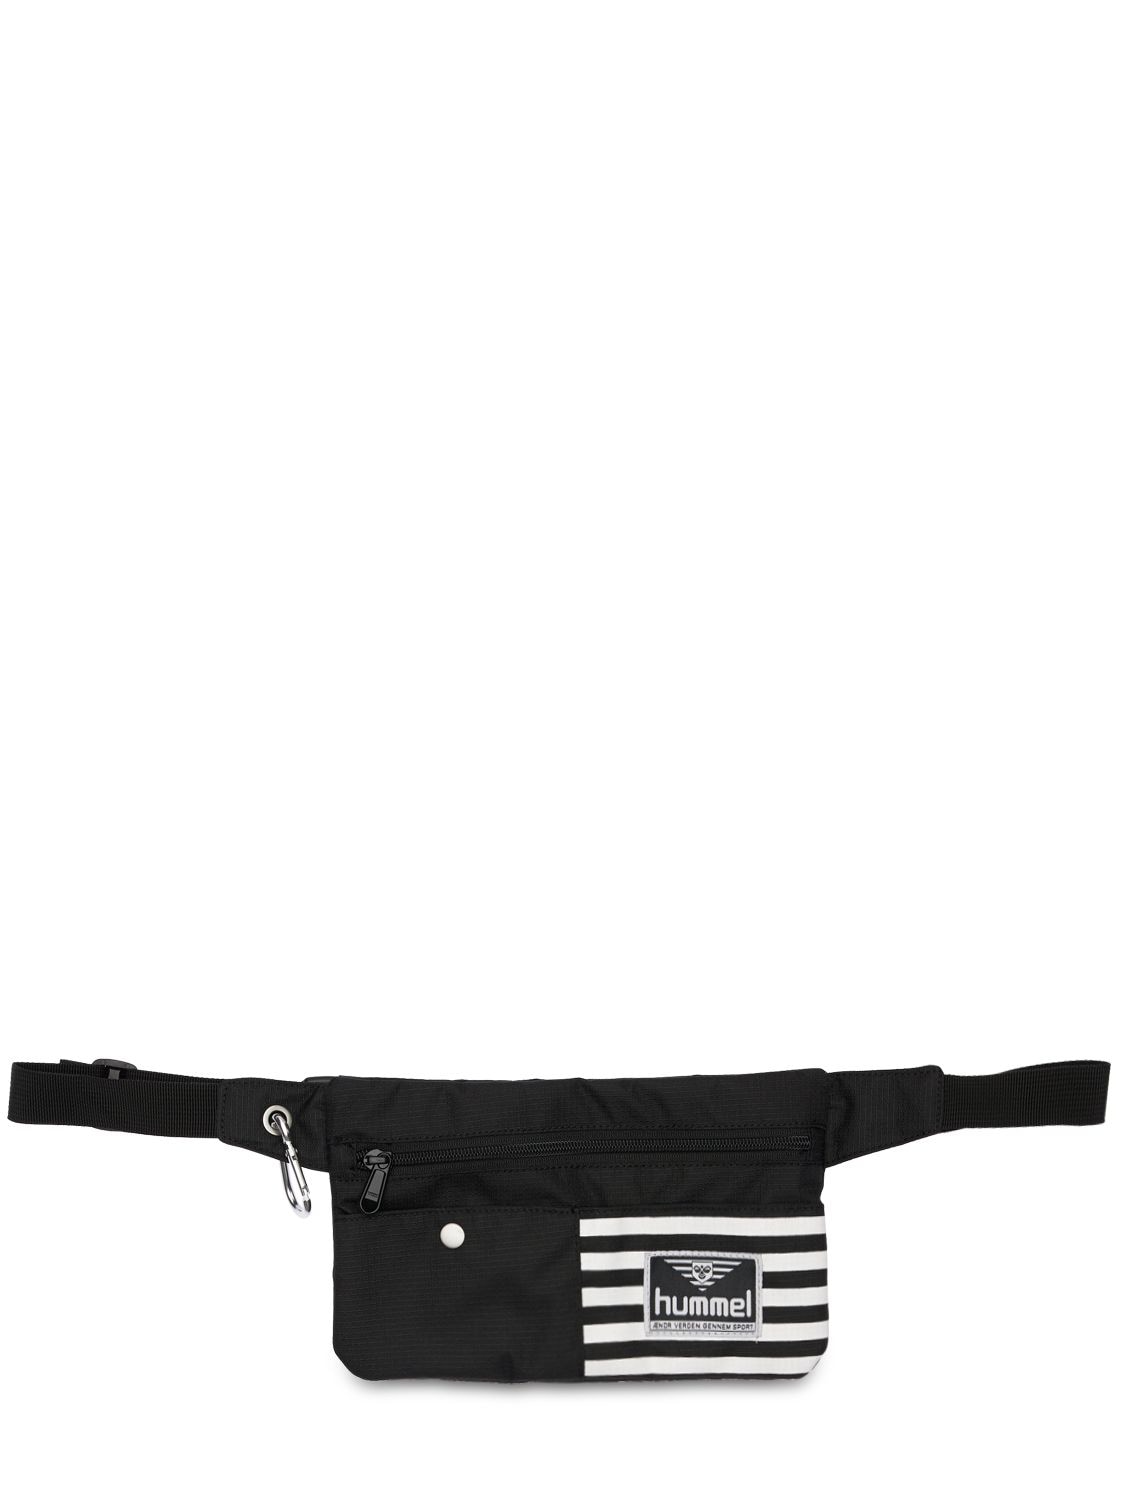 Hummel Casper Belt Bag In Black